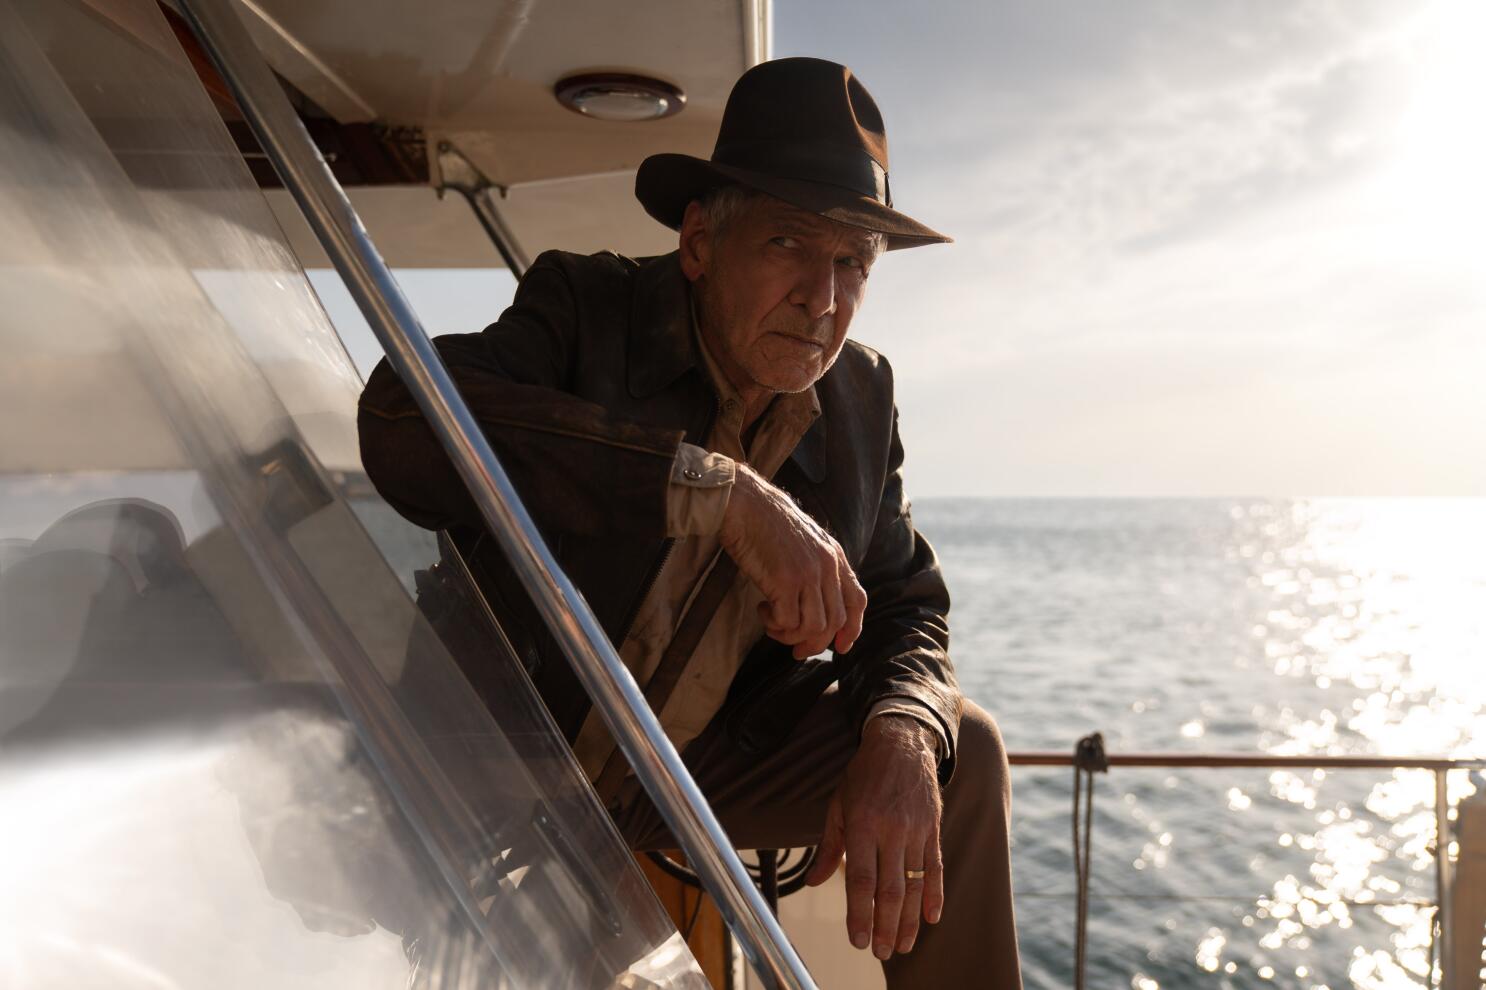 Indiana Jones con su chaqueta de cuero café y una fedora a juego. Posa con una pierna apoyada en un barco.